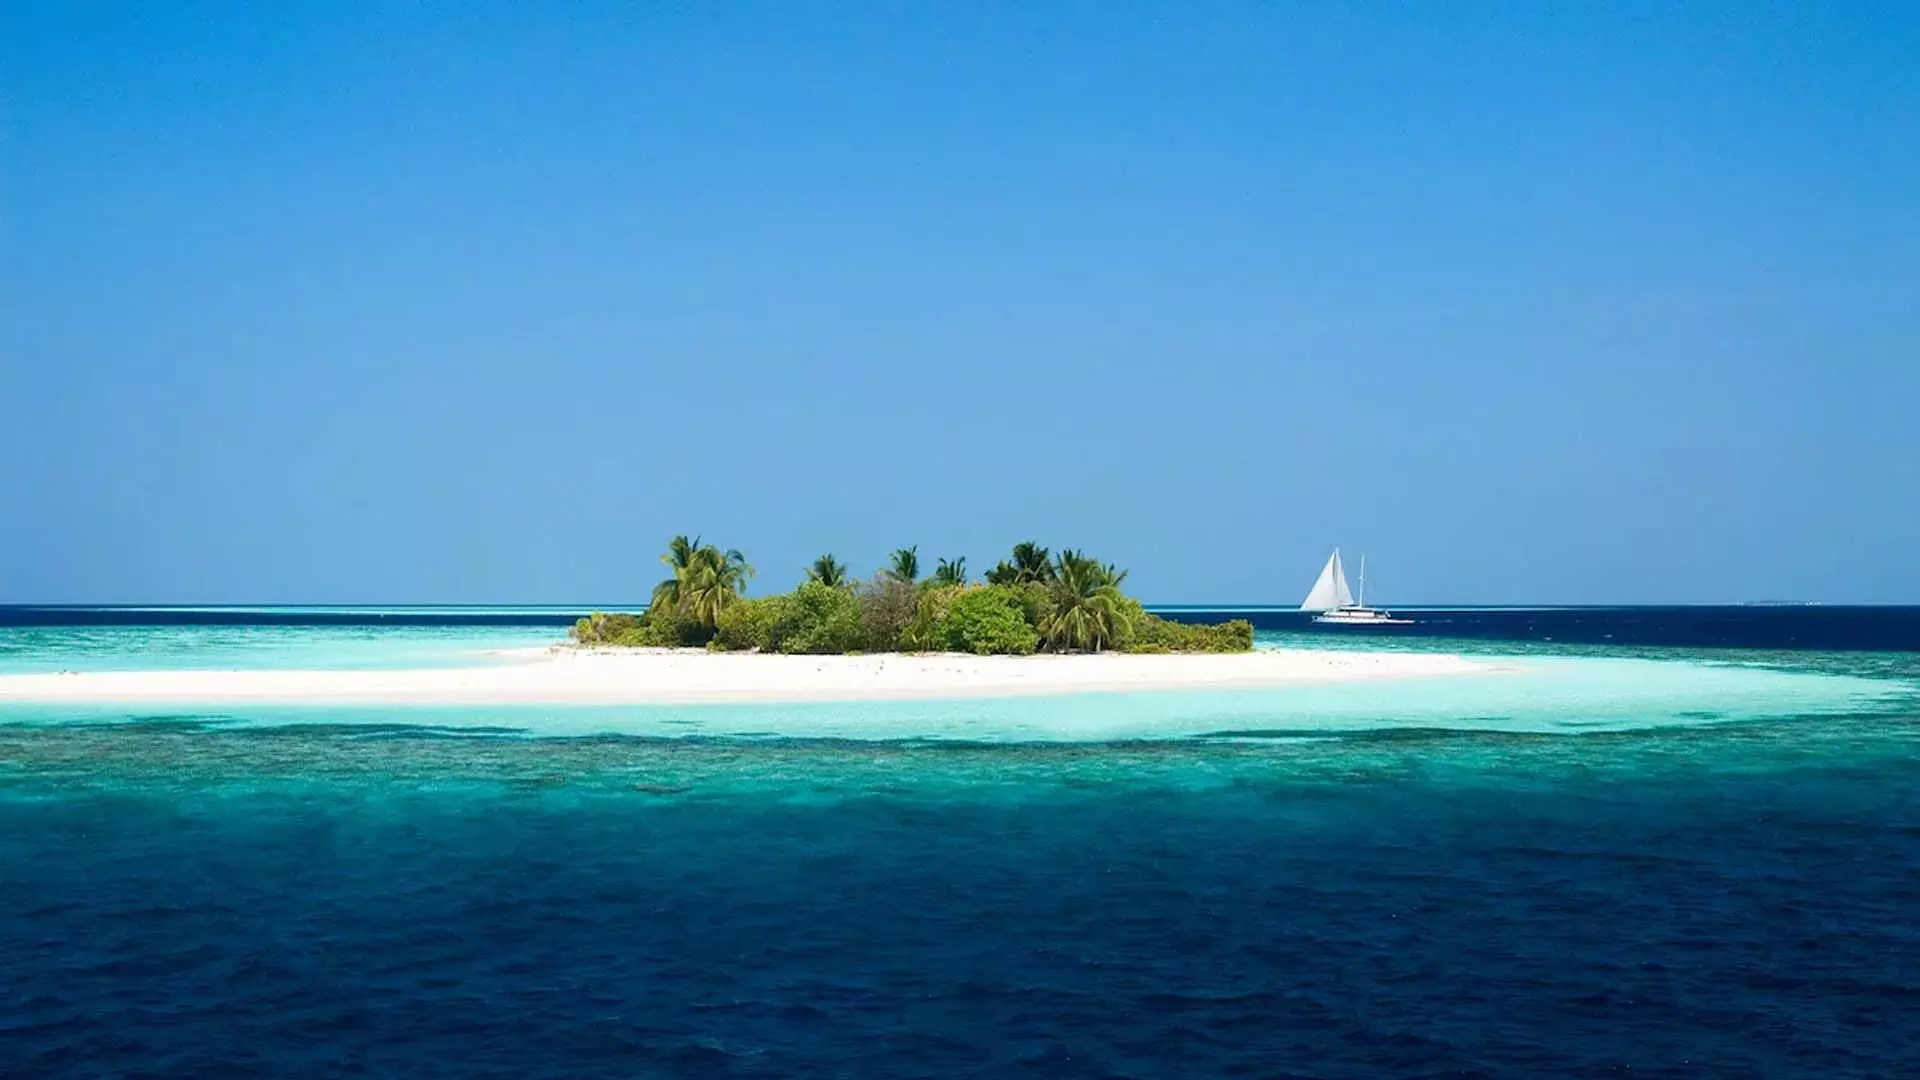 भारत तनावपूर्ण संबंधों के बावजूद मालदीव को आवश्यक वस्तुओं का निर्यात करेगा